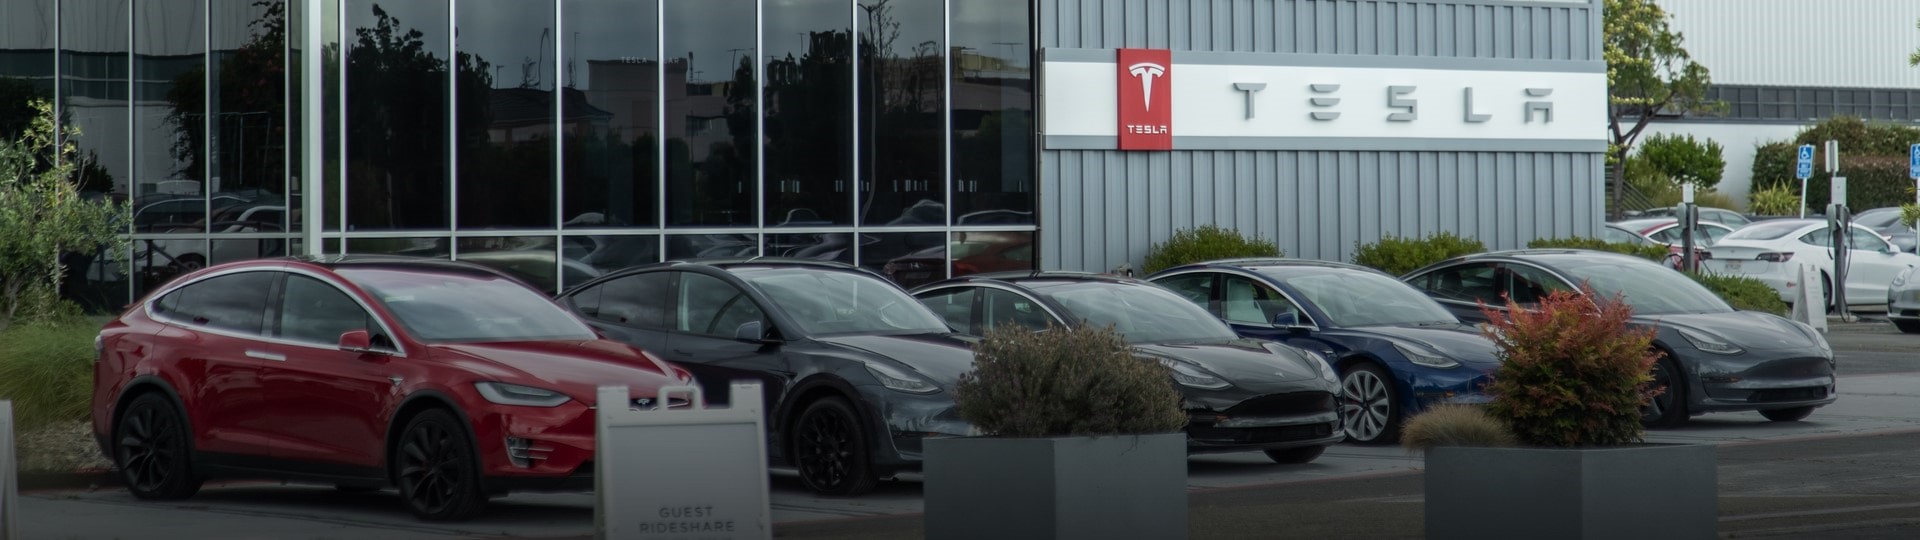 Tesla by letos mohla vyrobit půl milionu vozů